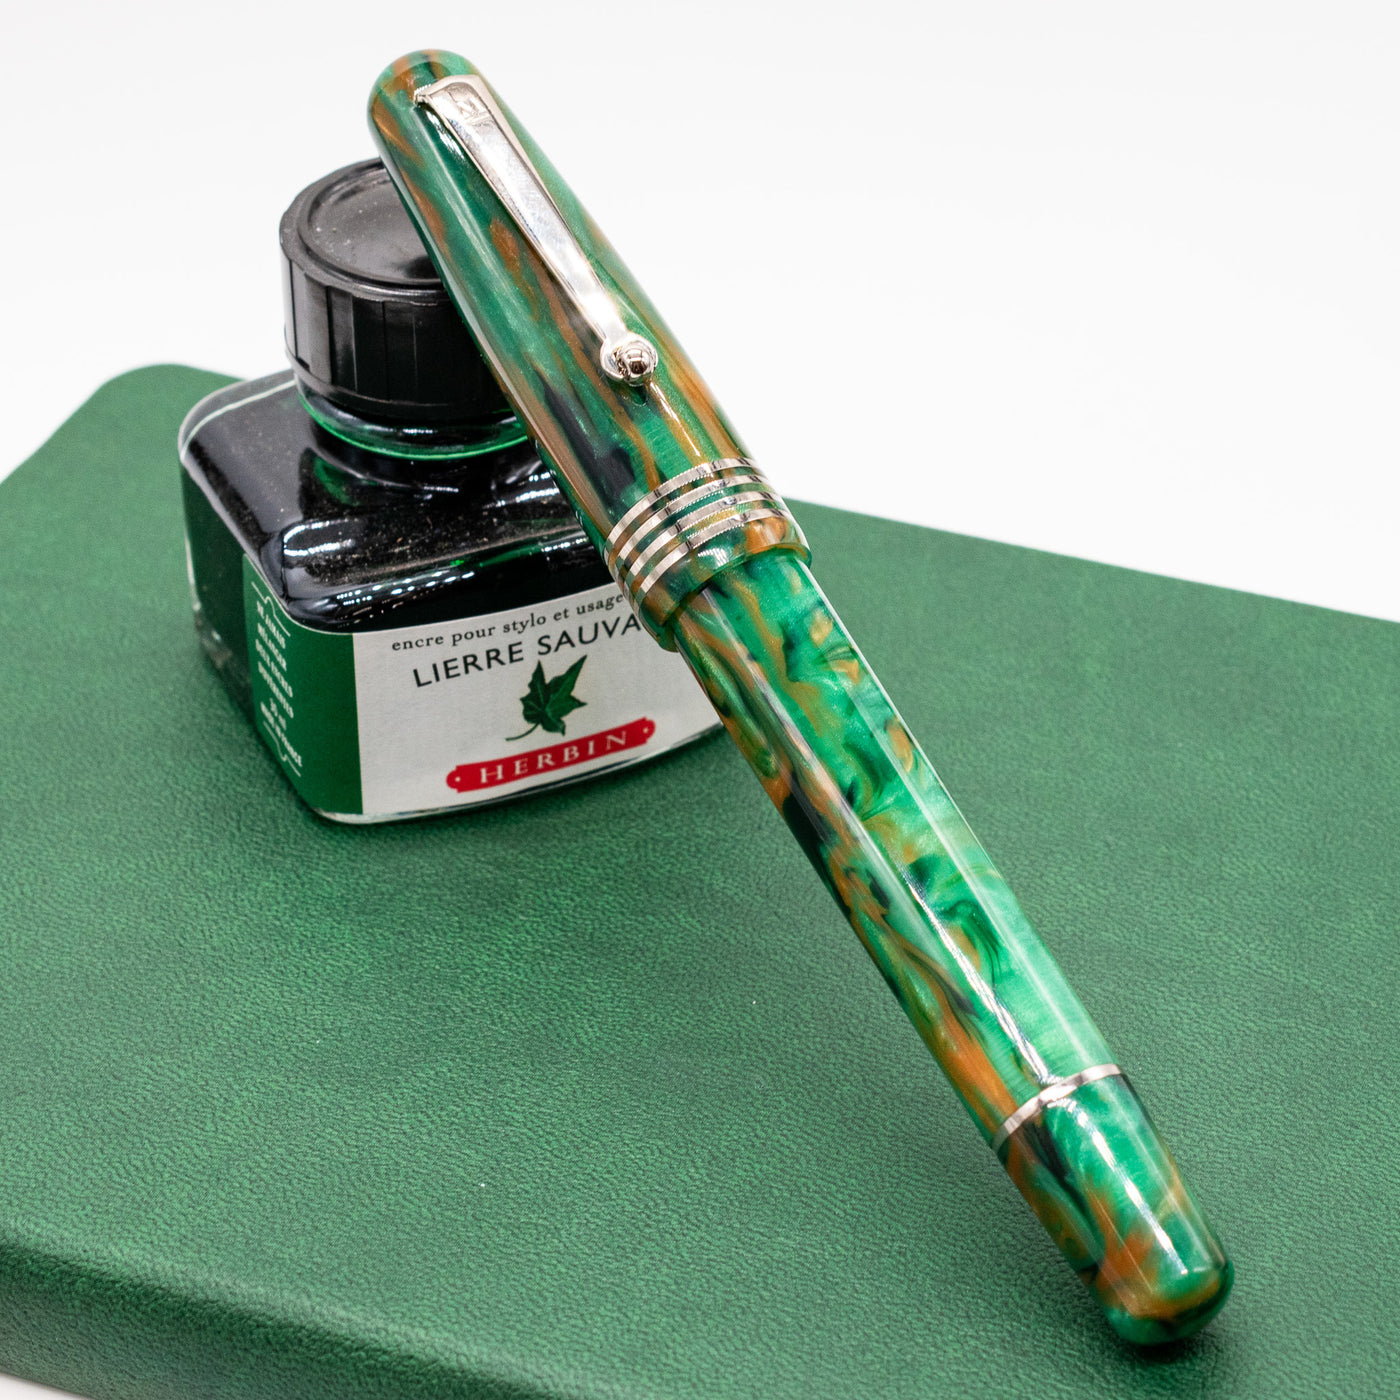 Molteni Modelo 54 Fountain Pen - Jade capped